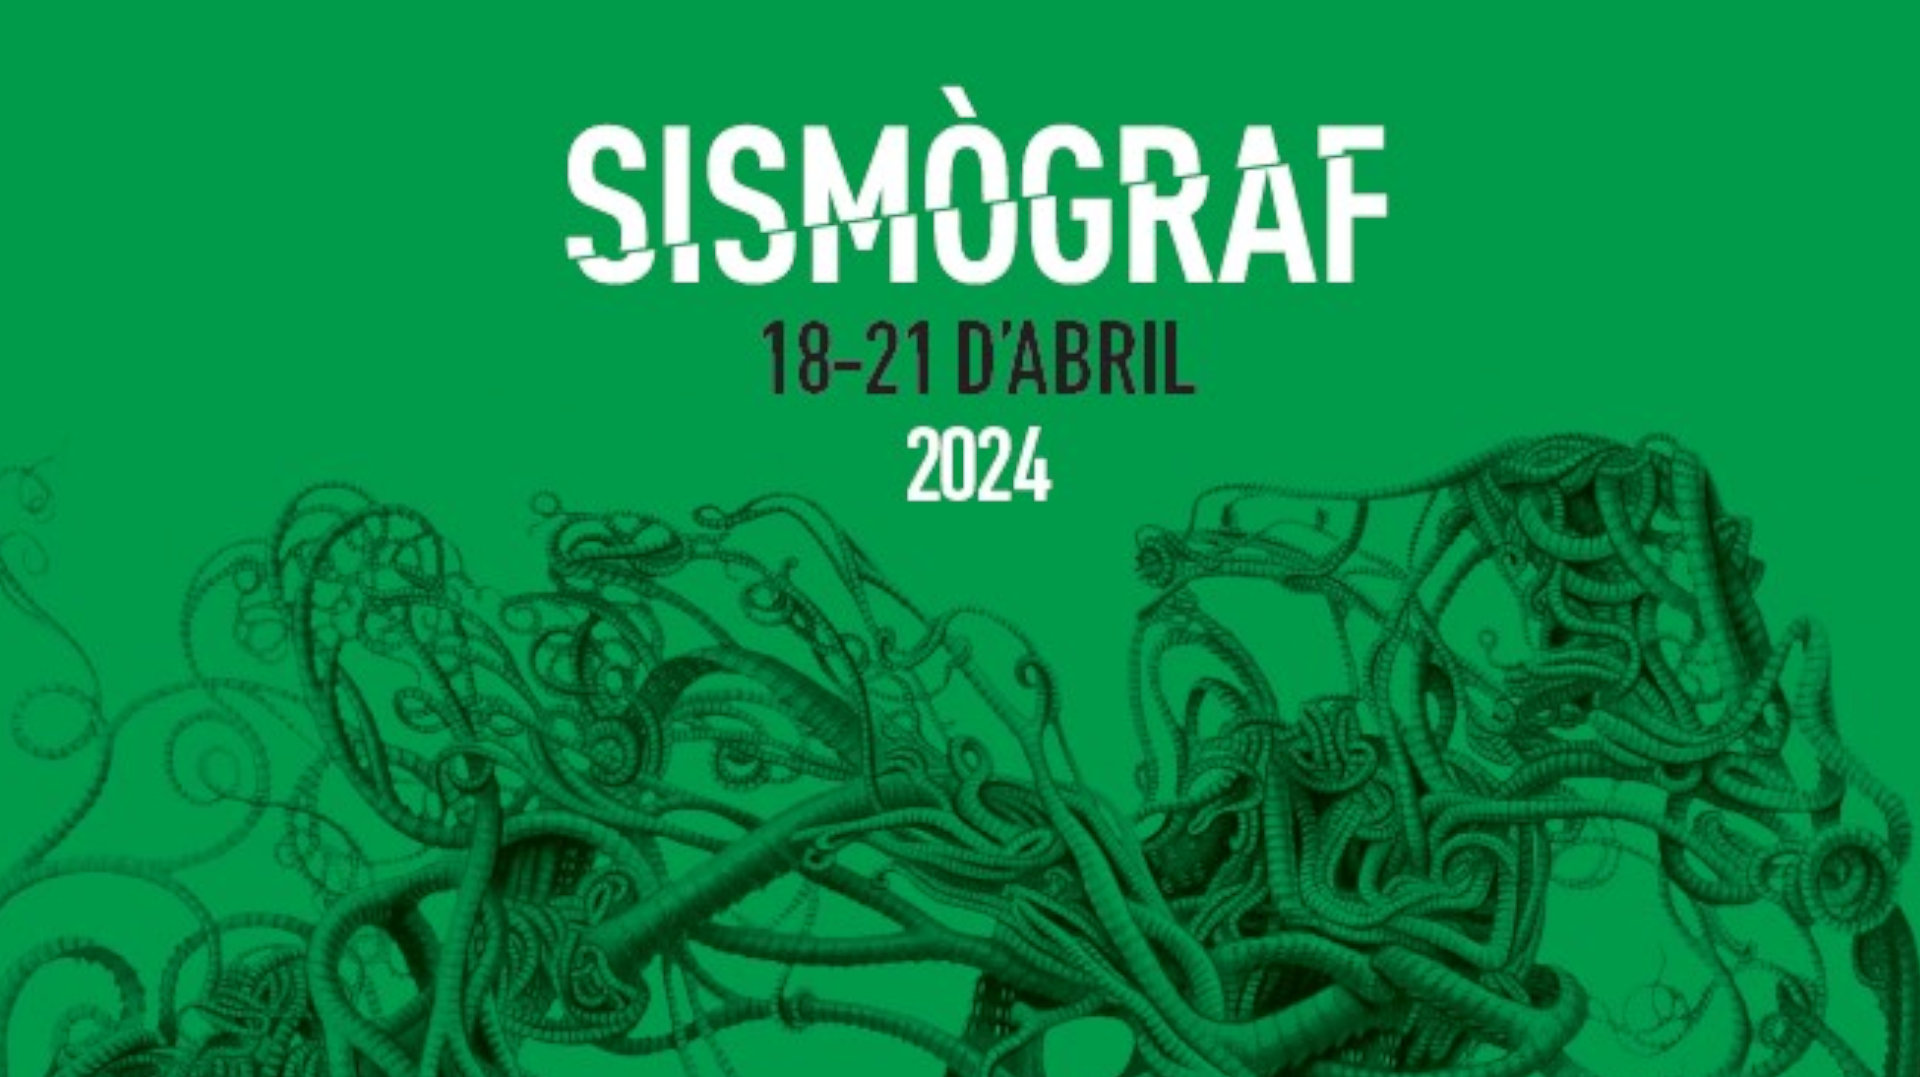 El Sismògraf 2024 busca voluntaris per participar activament al festival